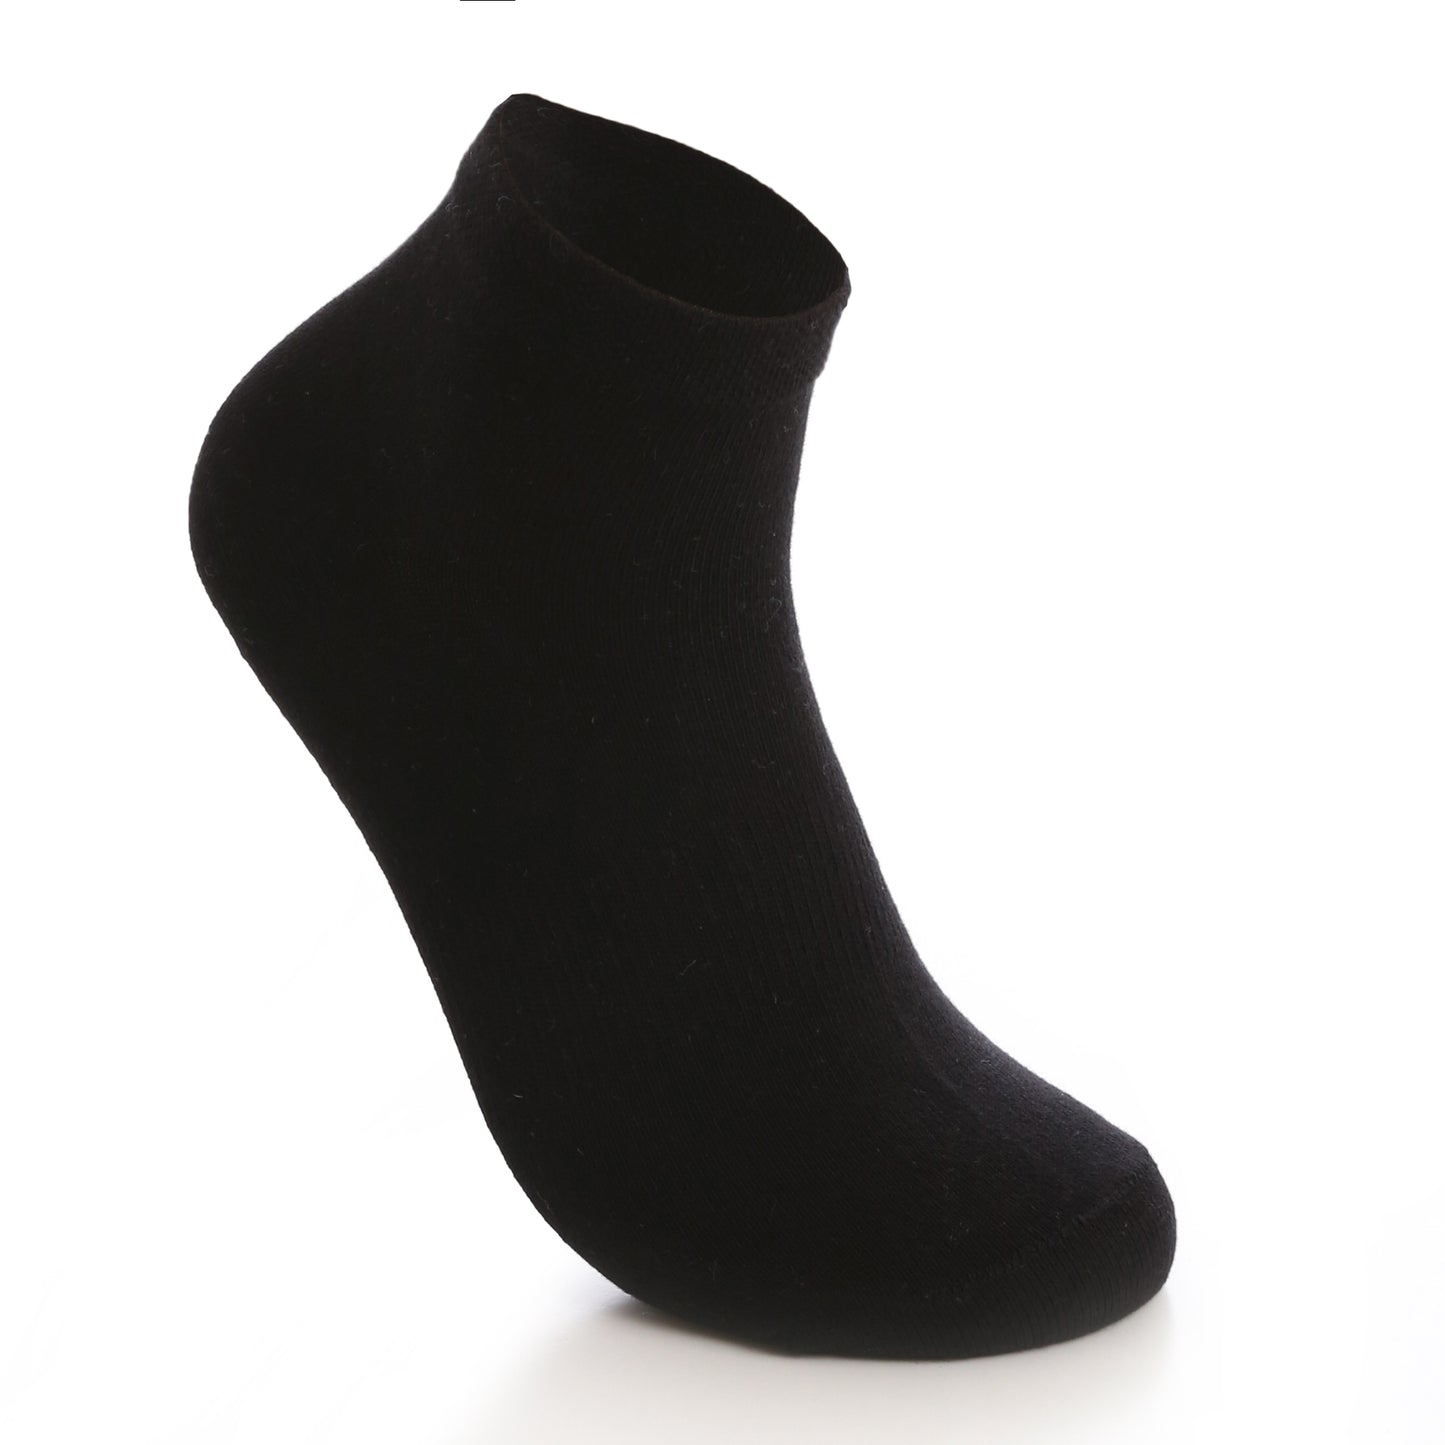 Basic Ankle Socks Pack of 2